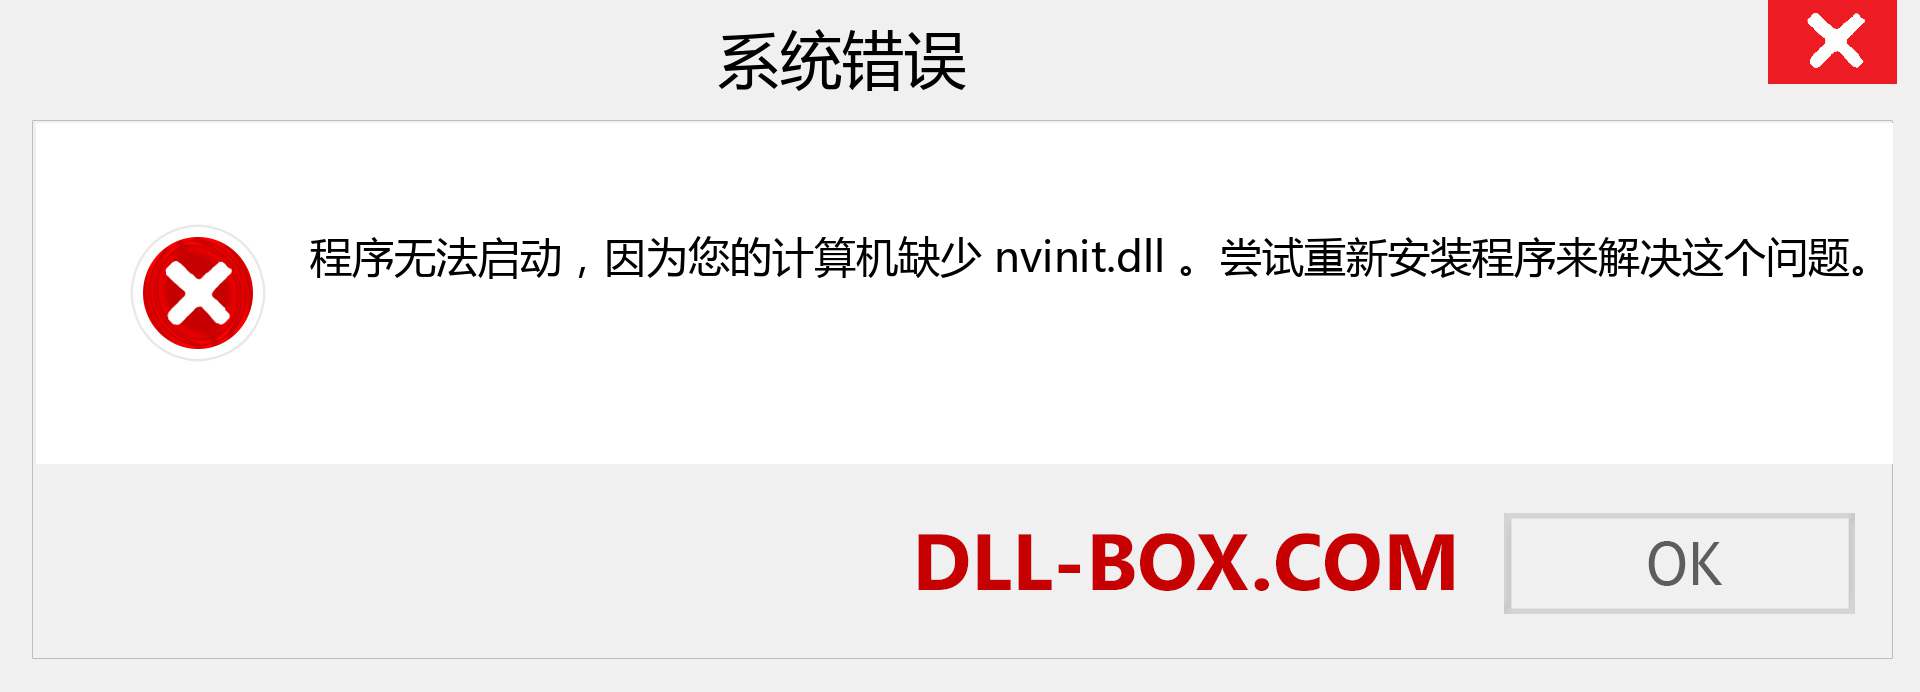 nvinit.dll 文件丢失？。 适用于 Windows 7、8、10 的下载 - 修复 Windows、照片、图像上的 nvinit dll 丢失错误